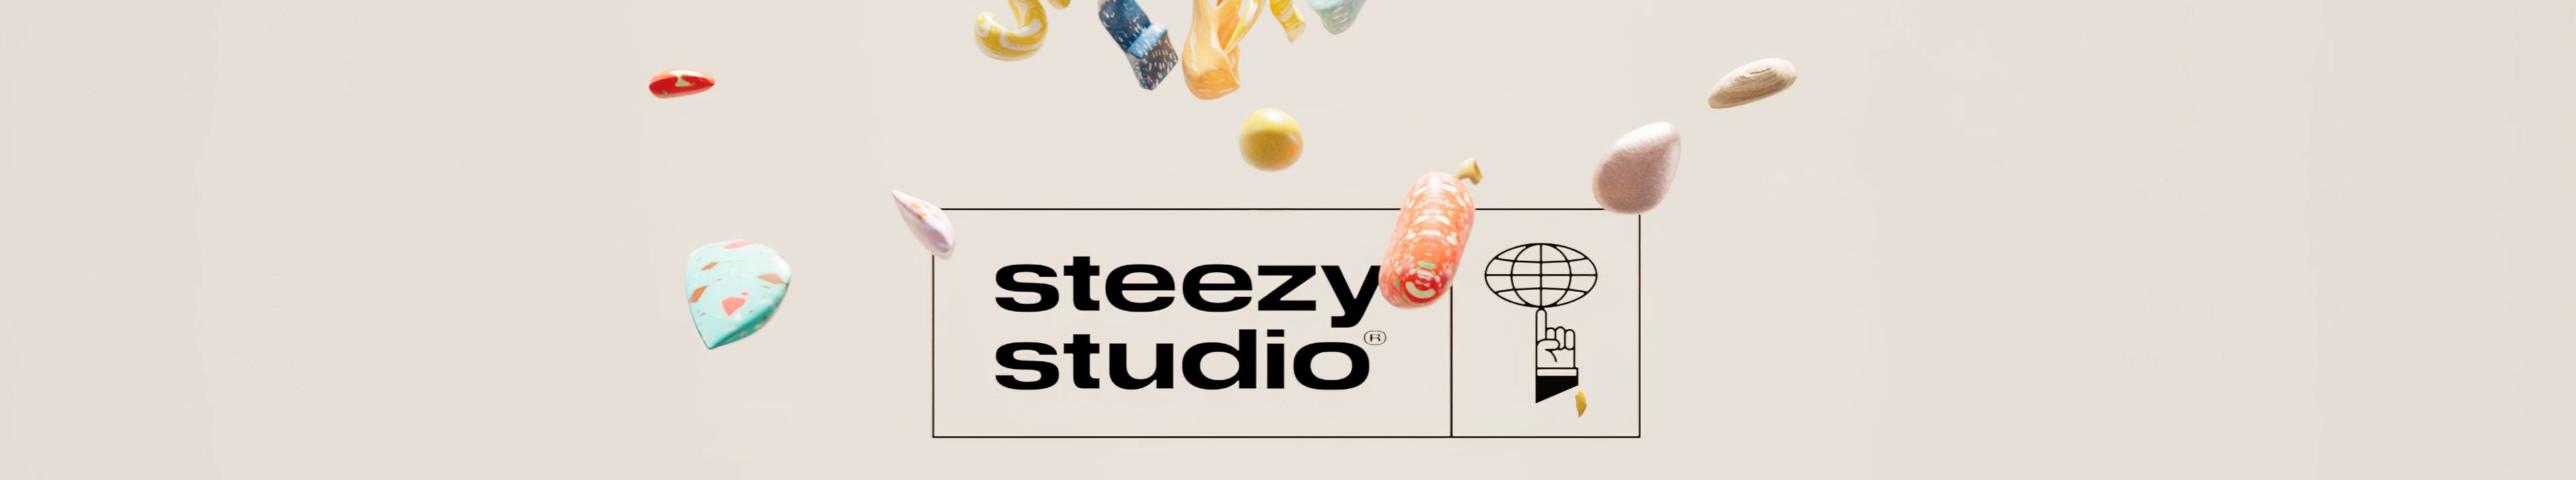 Banner de perfil de steezy studio